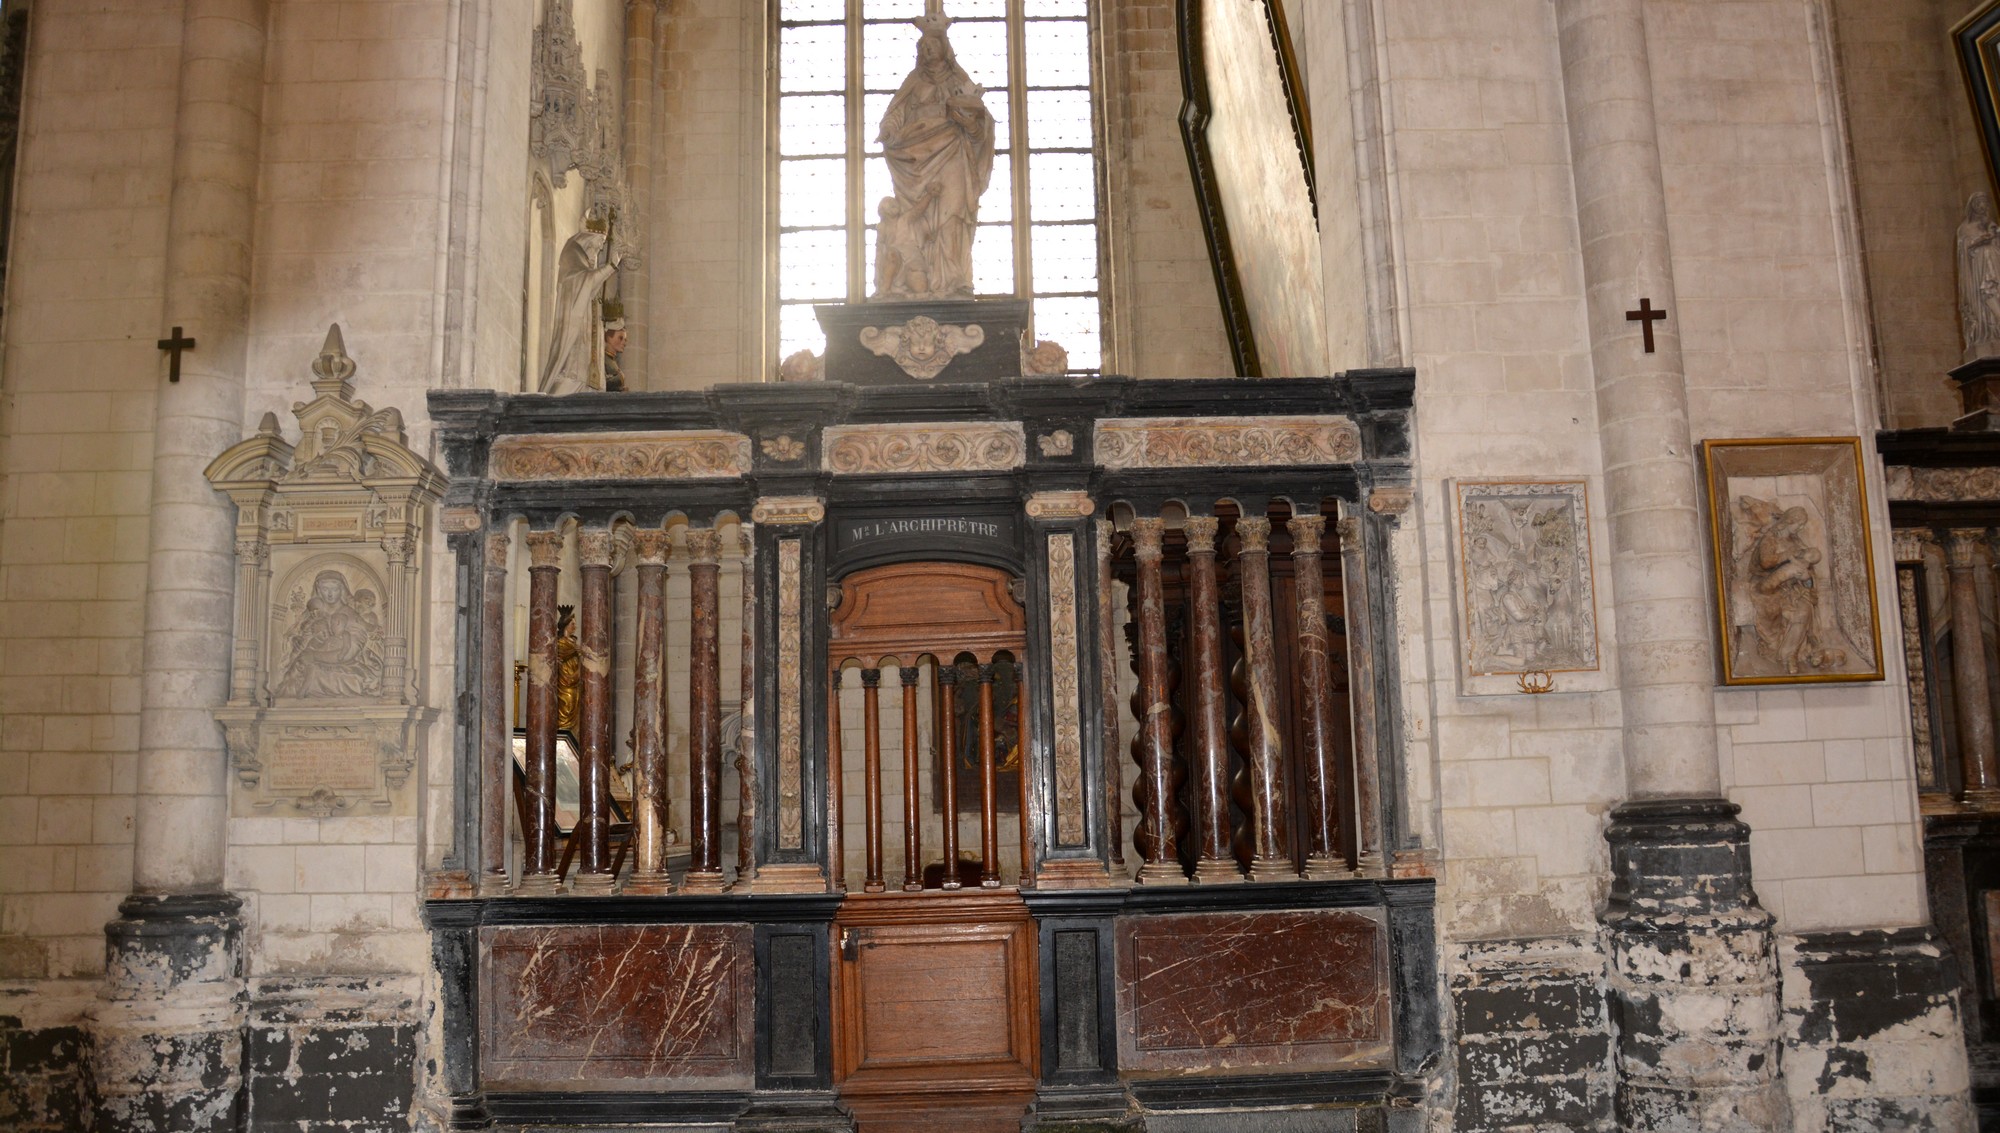 Clôture de la chapelle de wissocq composée de trois compartiments de quatre colonnes et deux colonnes engagées en marbre veiné brun clair et calcaire noir de type pierre de Tournai.